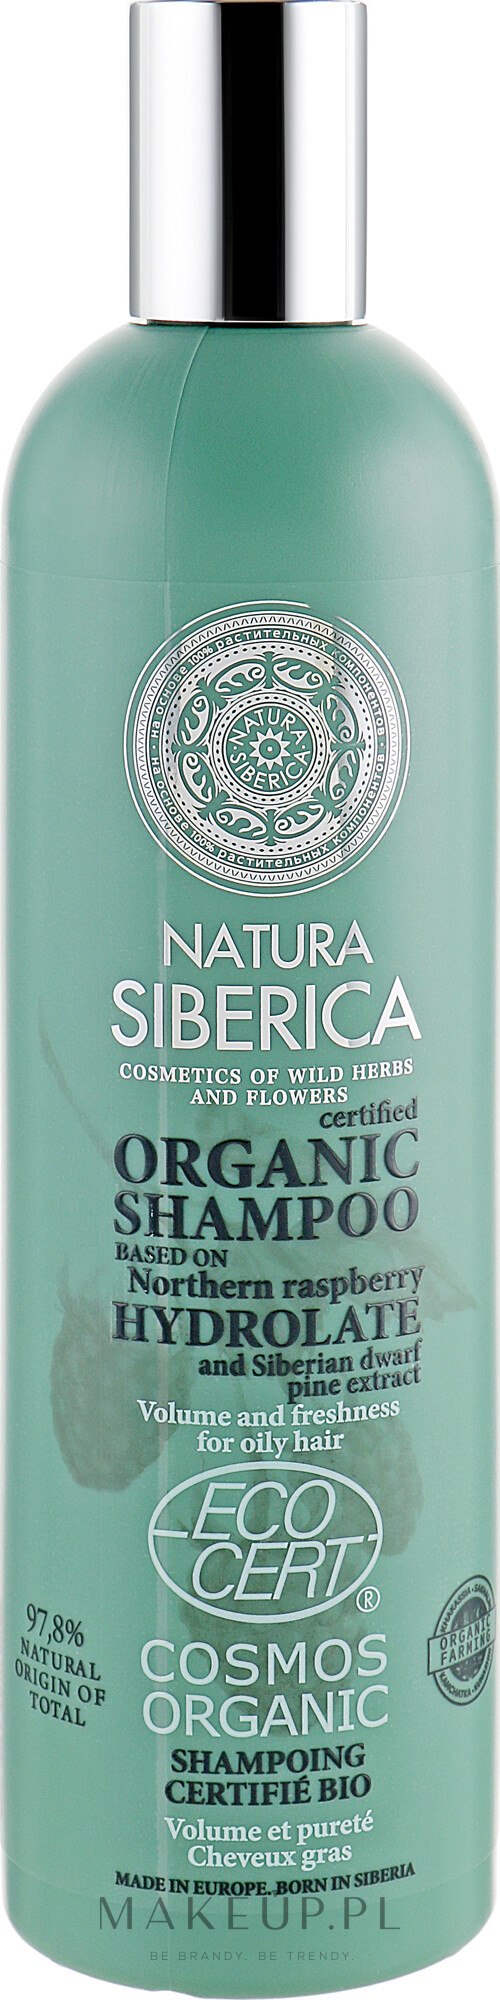 szampon do włosów syberica